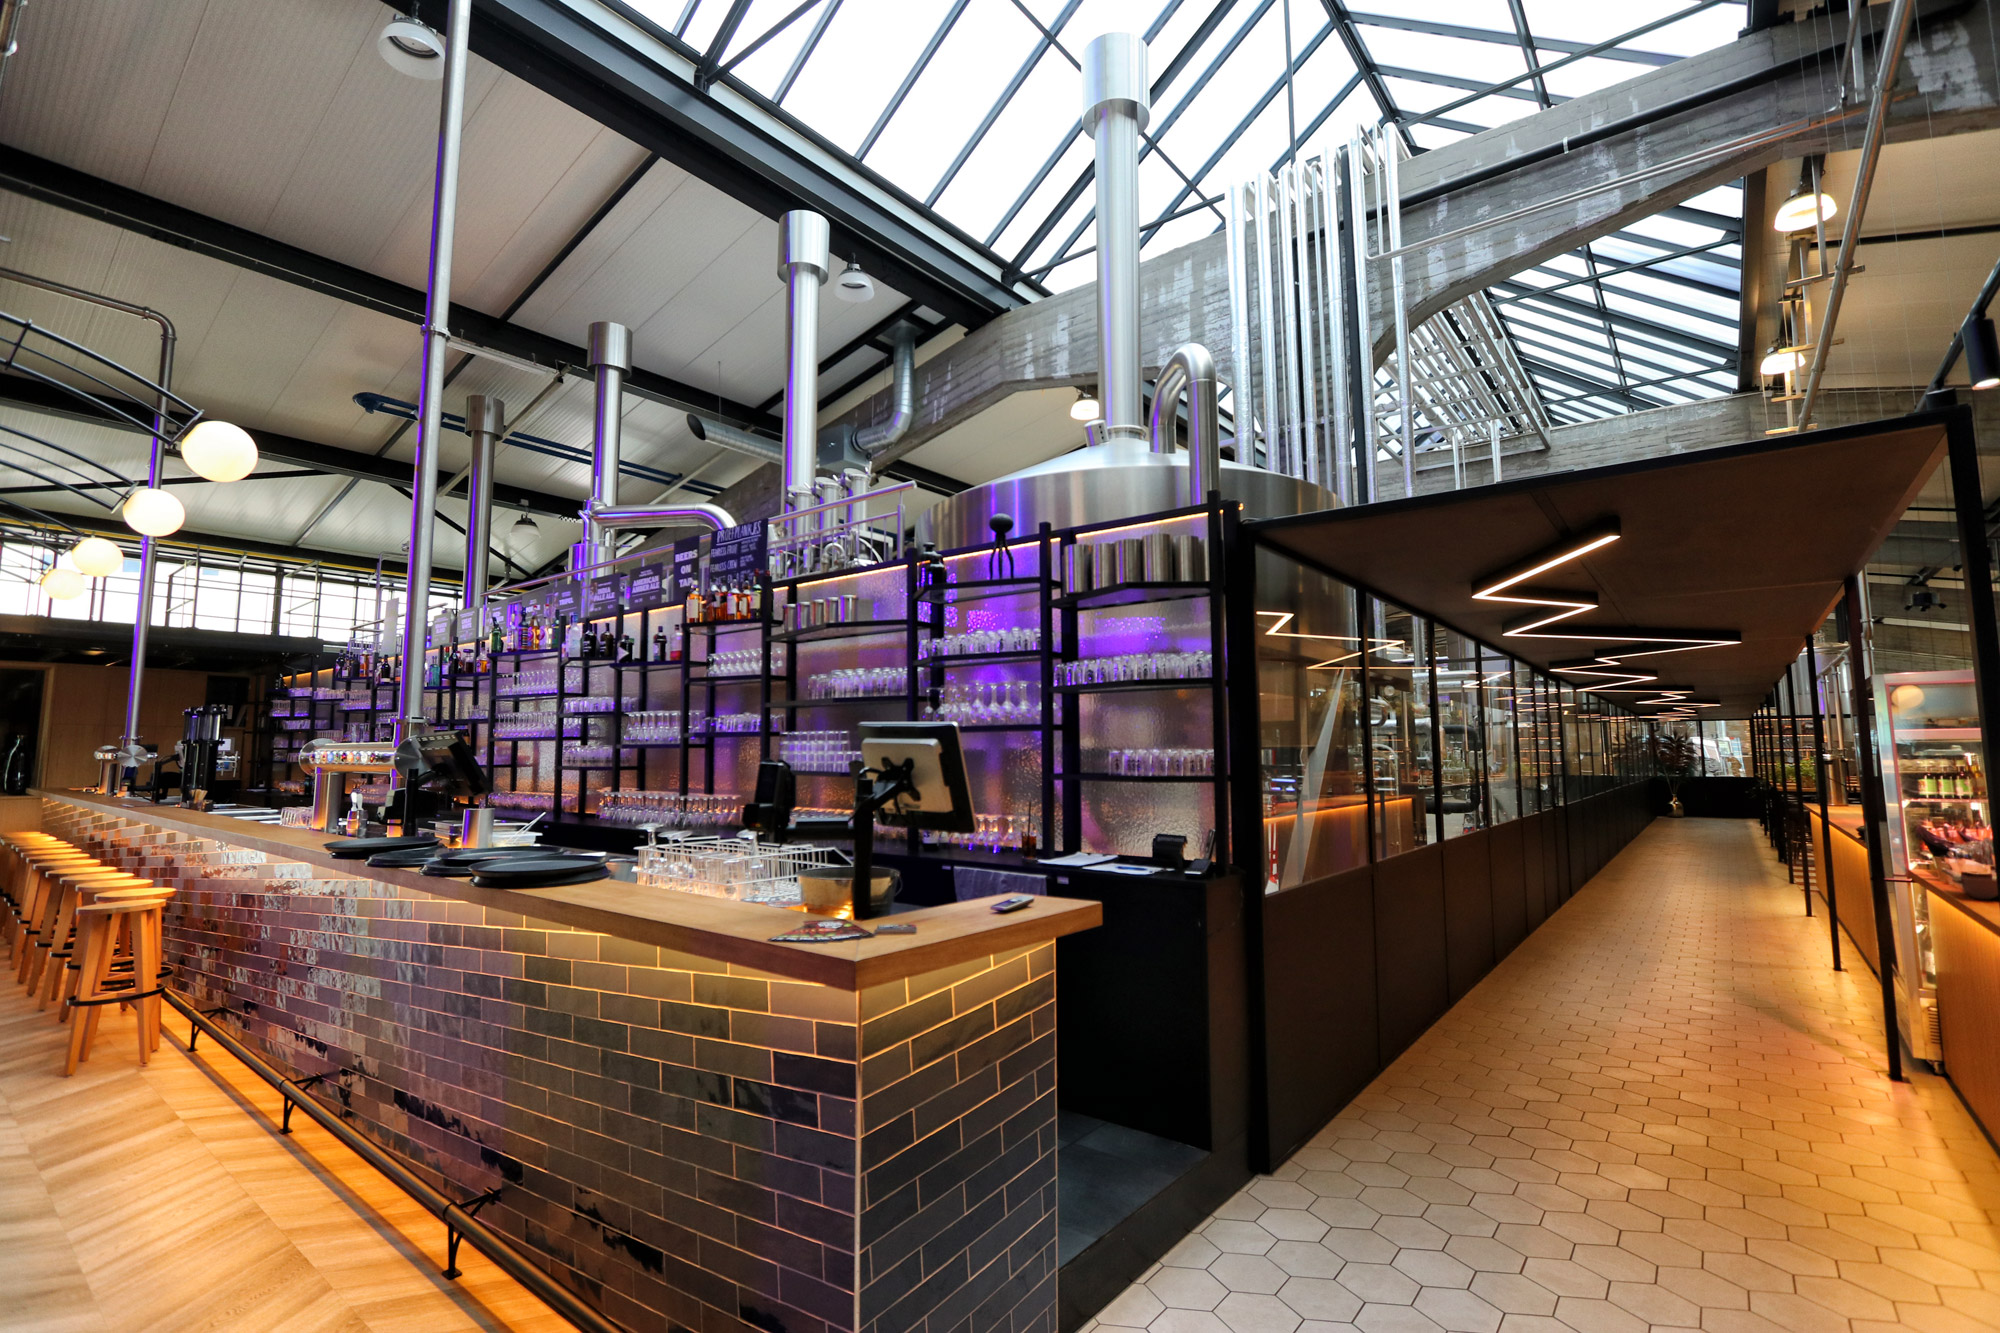 De leukste biercafés in Rotterdam - Stadshaven Brouwerij